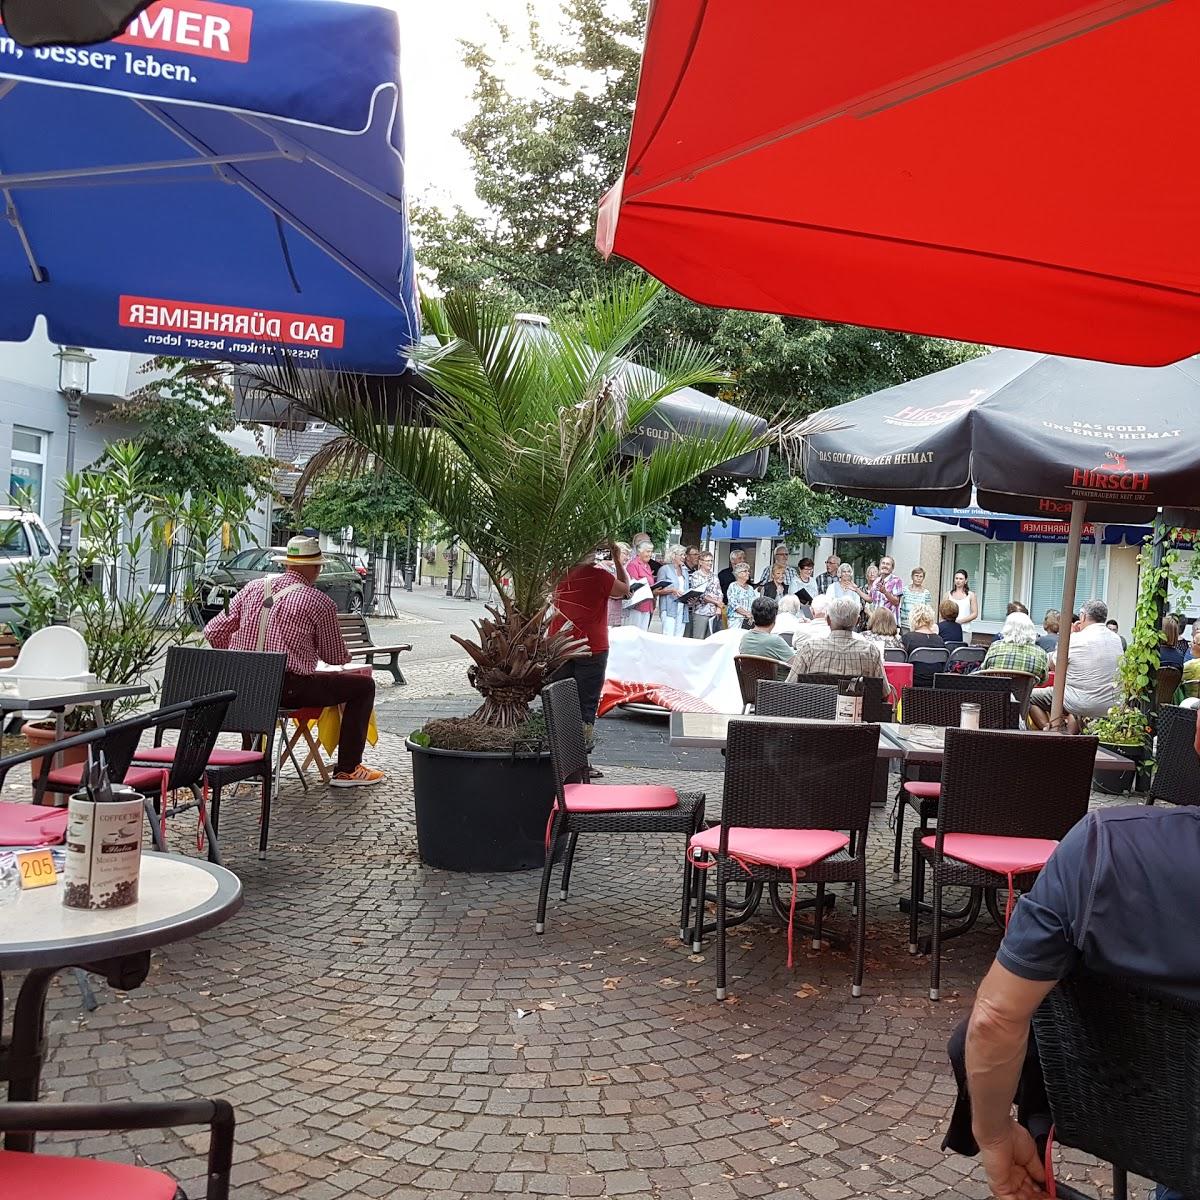 Restaurant "La Vie" in Tuttlingen